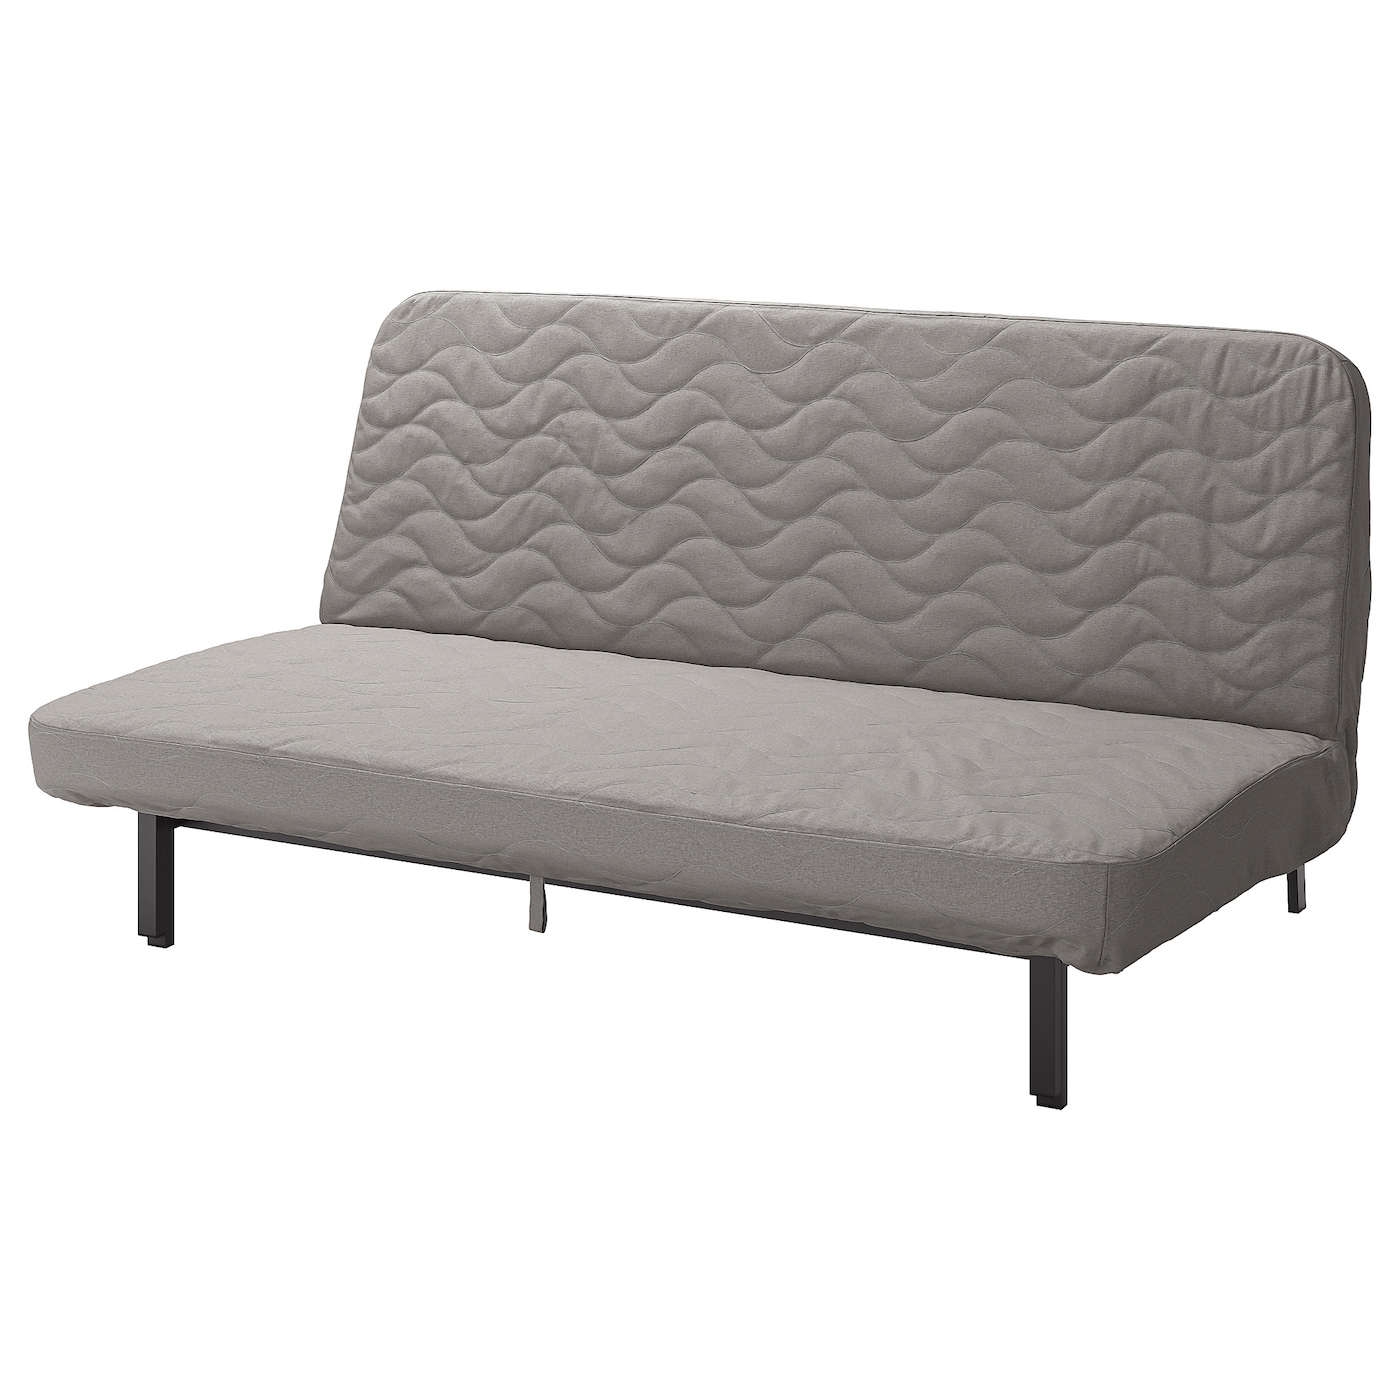 NYHAMN 3-местный диван-кровать, поролоновый матрас в комплекте/Книса серый/бежевый IKEA складная двухцелевая спинка плавающий ряд с сетчатым гамаком водный развлекательный шезлонг плавающая кровать диван